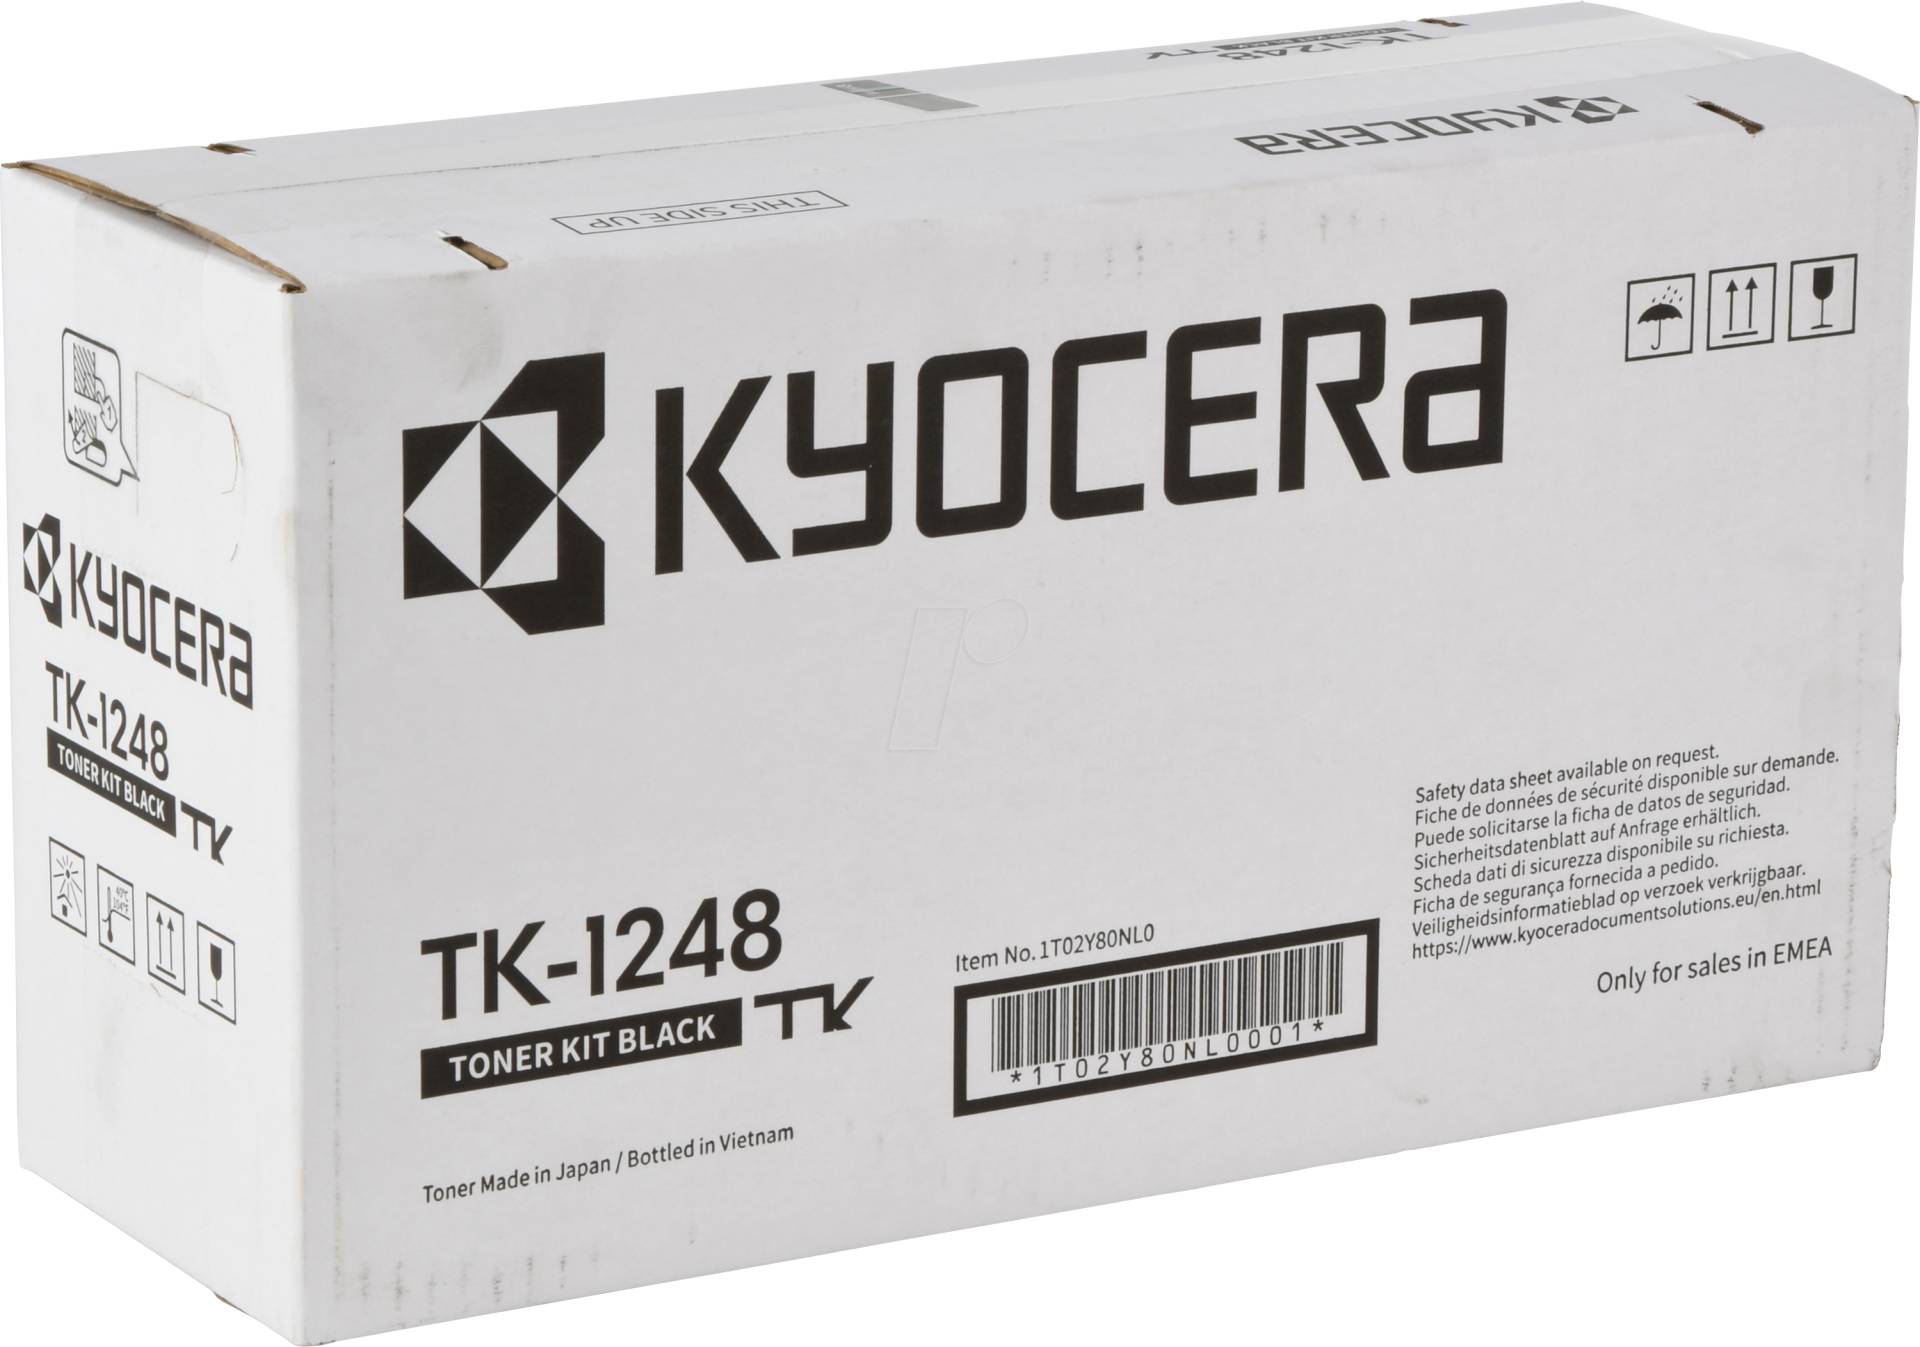 TONER TK 1248 - Toner, Kyocera, schwarz, TK-1248, original von Kyocera